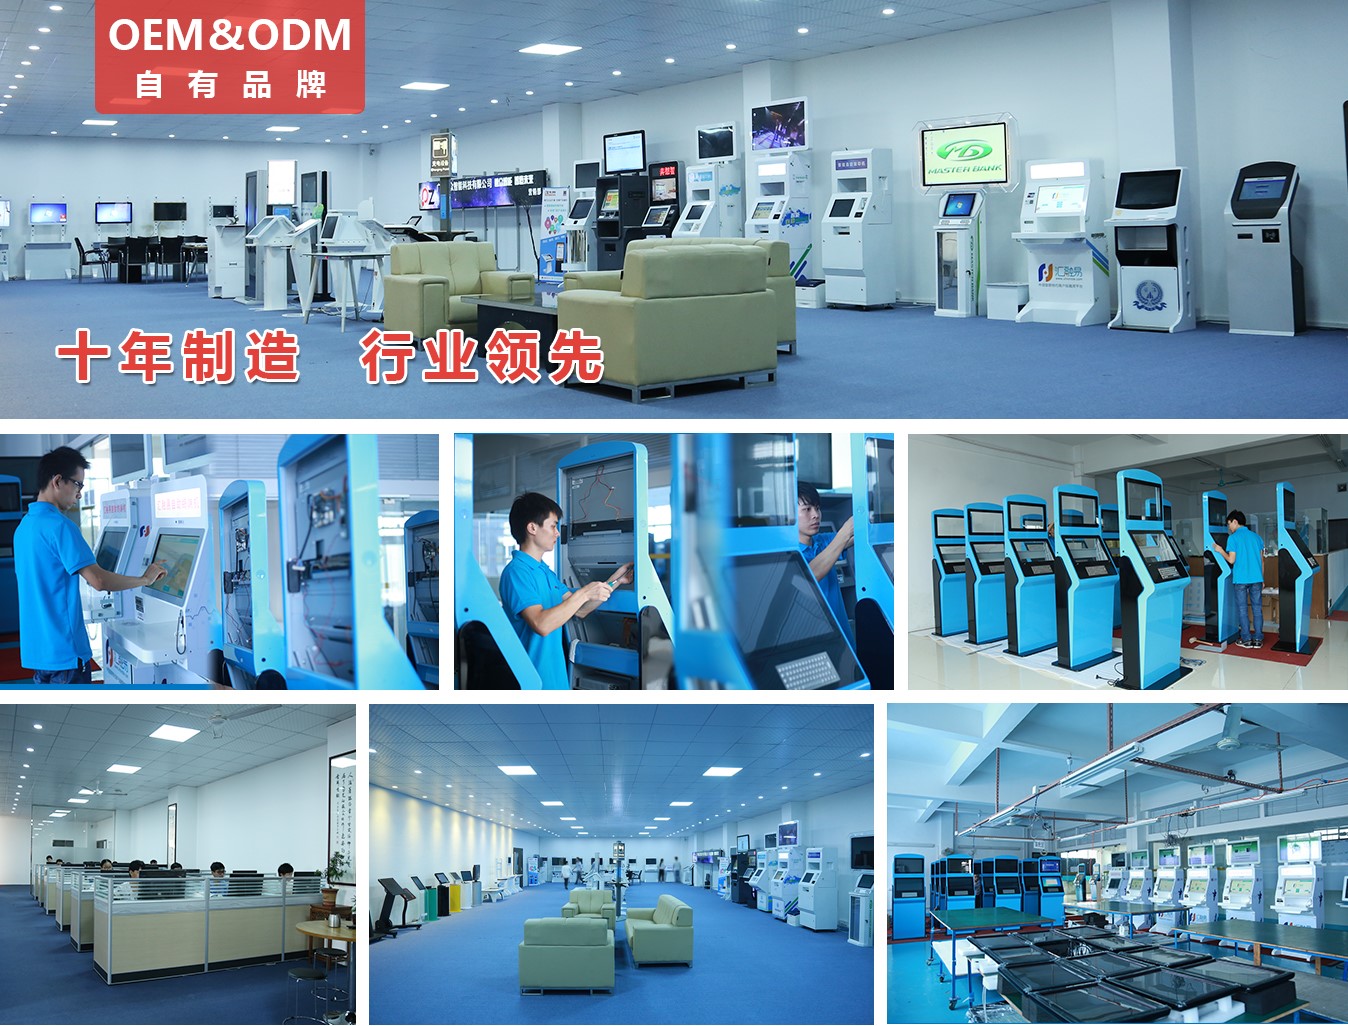 21.5寸壁挂广告机 PZ-21.5BE--广州磐众智能科技有限公司